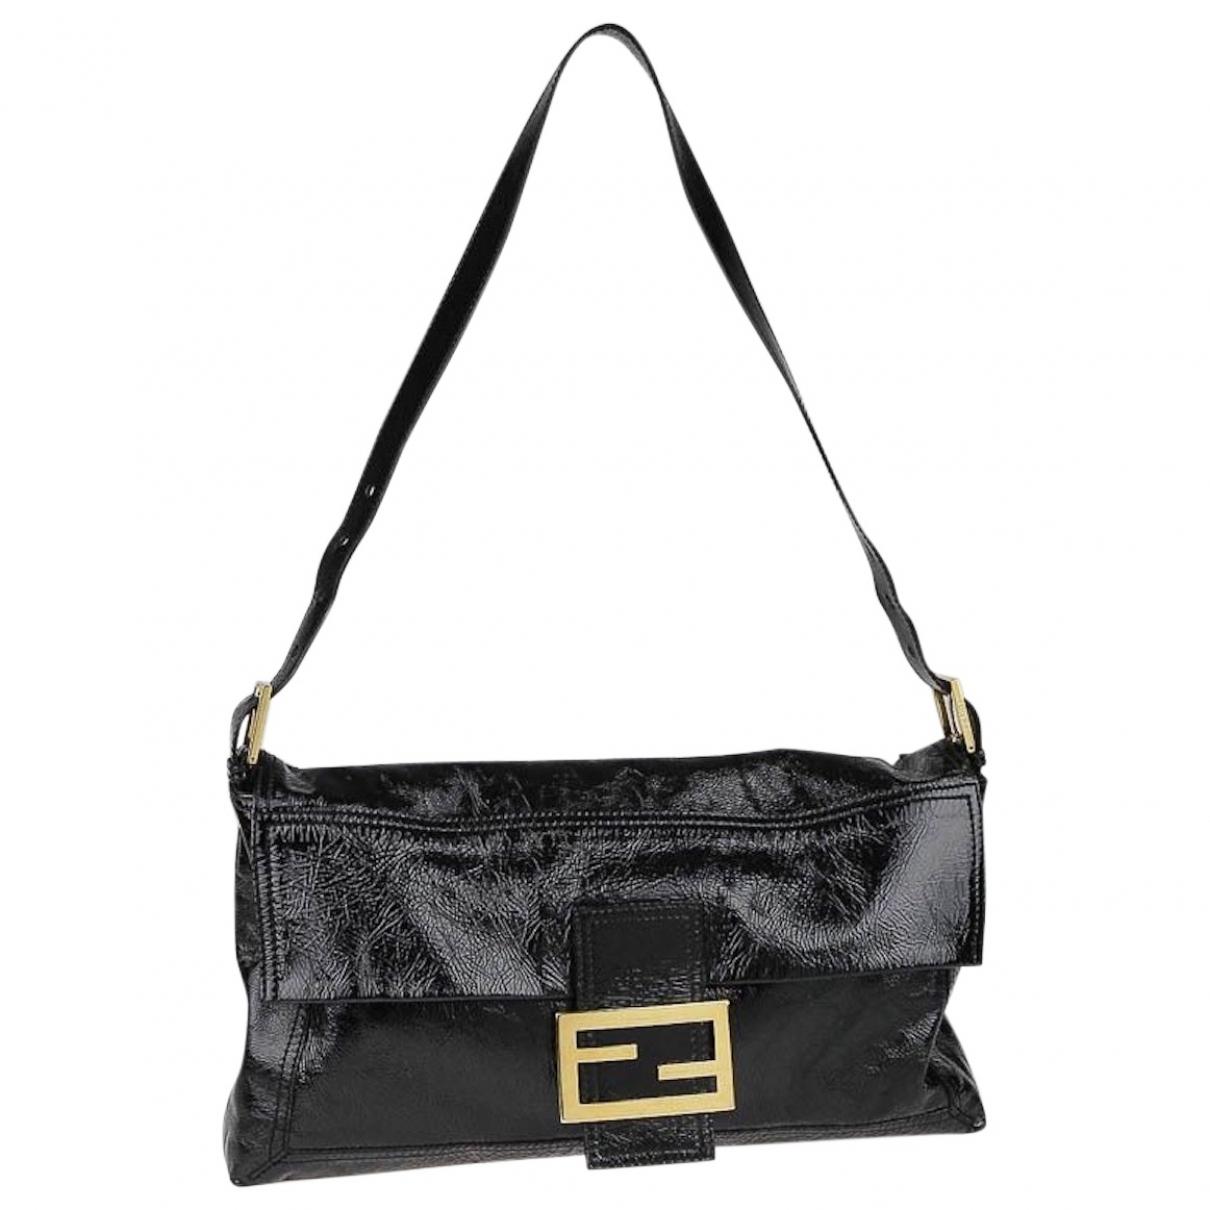 Lyst - Fendi Vintage Baguette Black Leather Handbag in Black